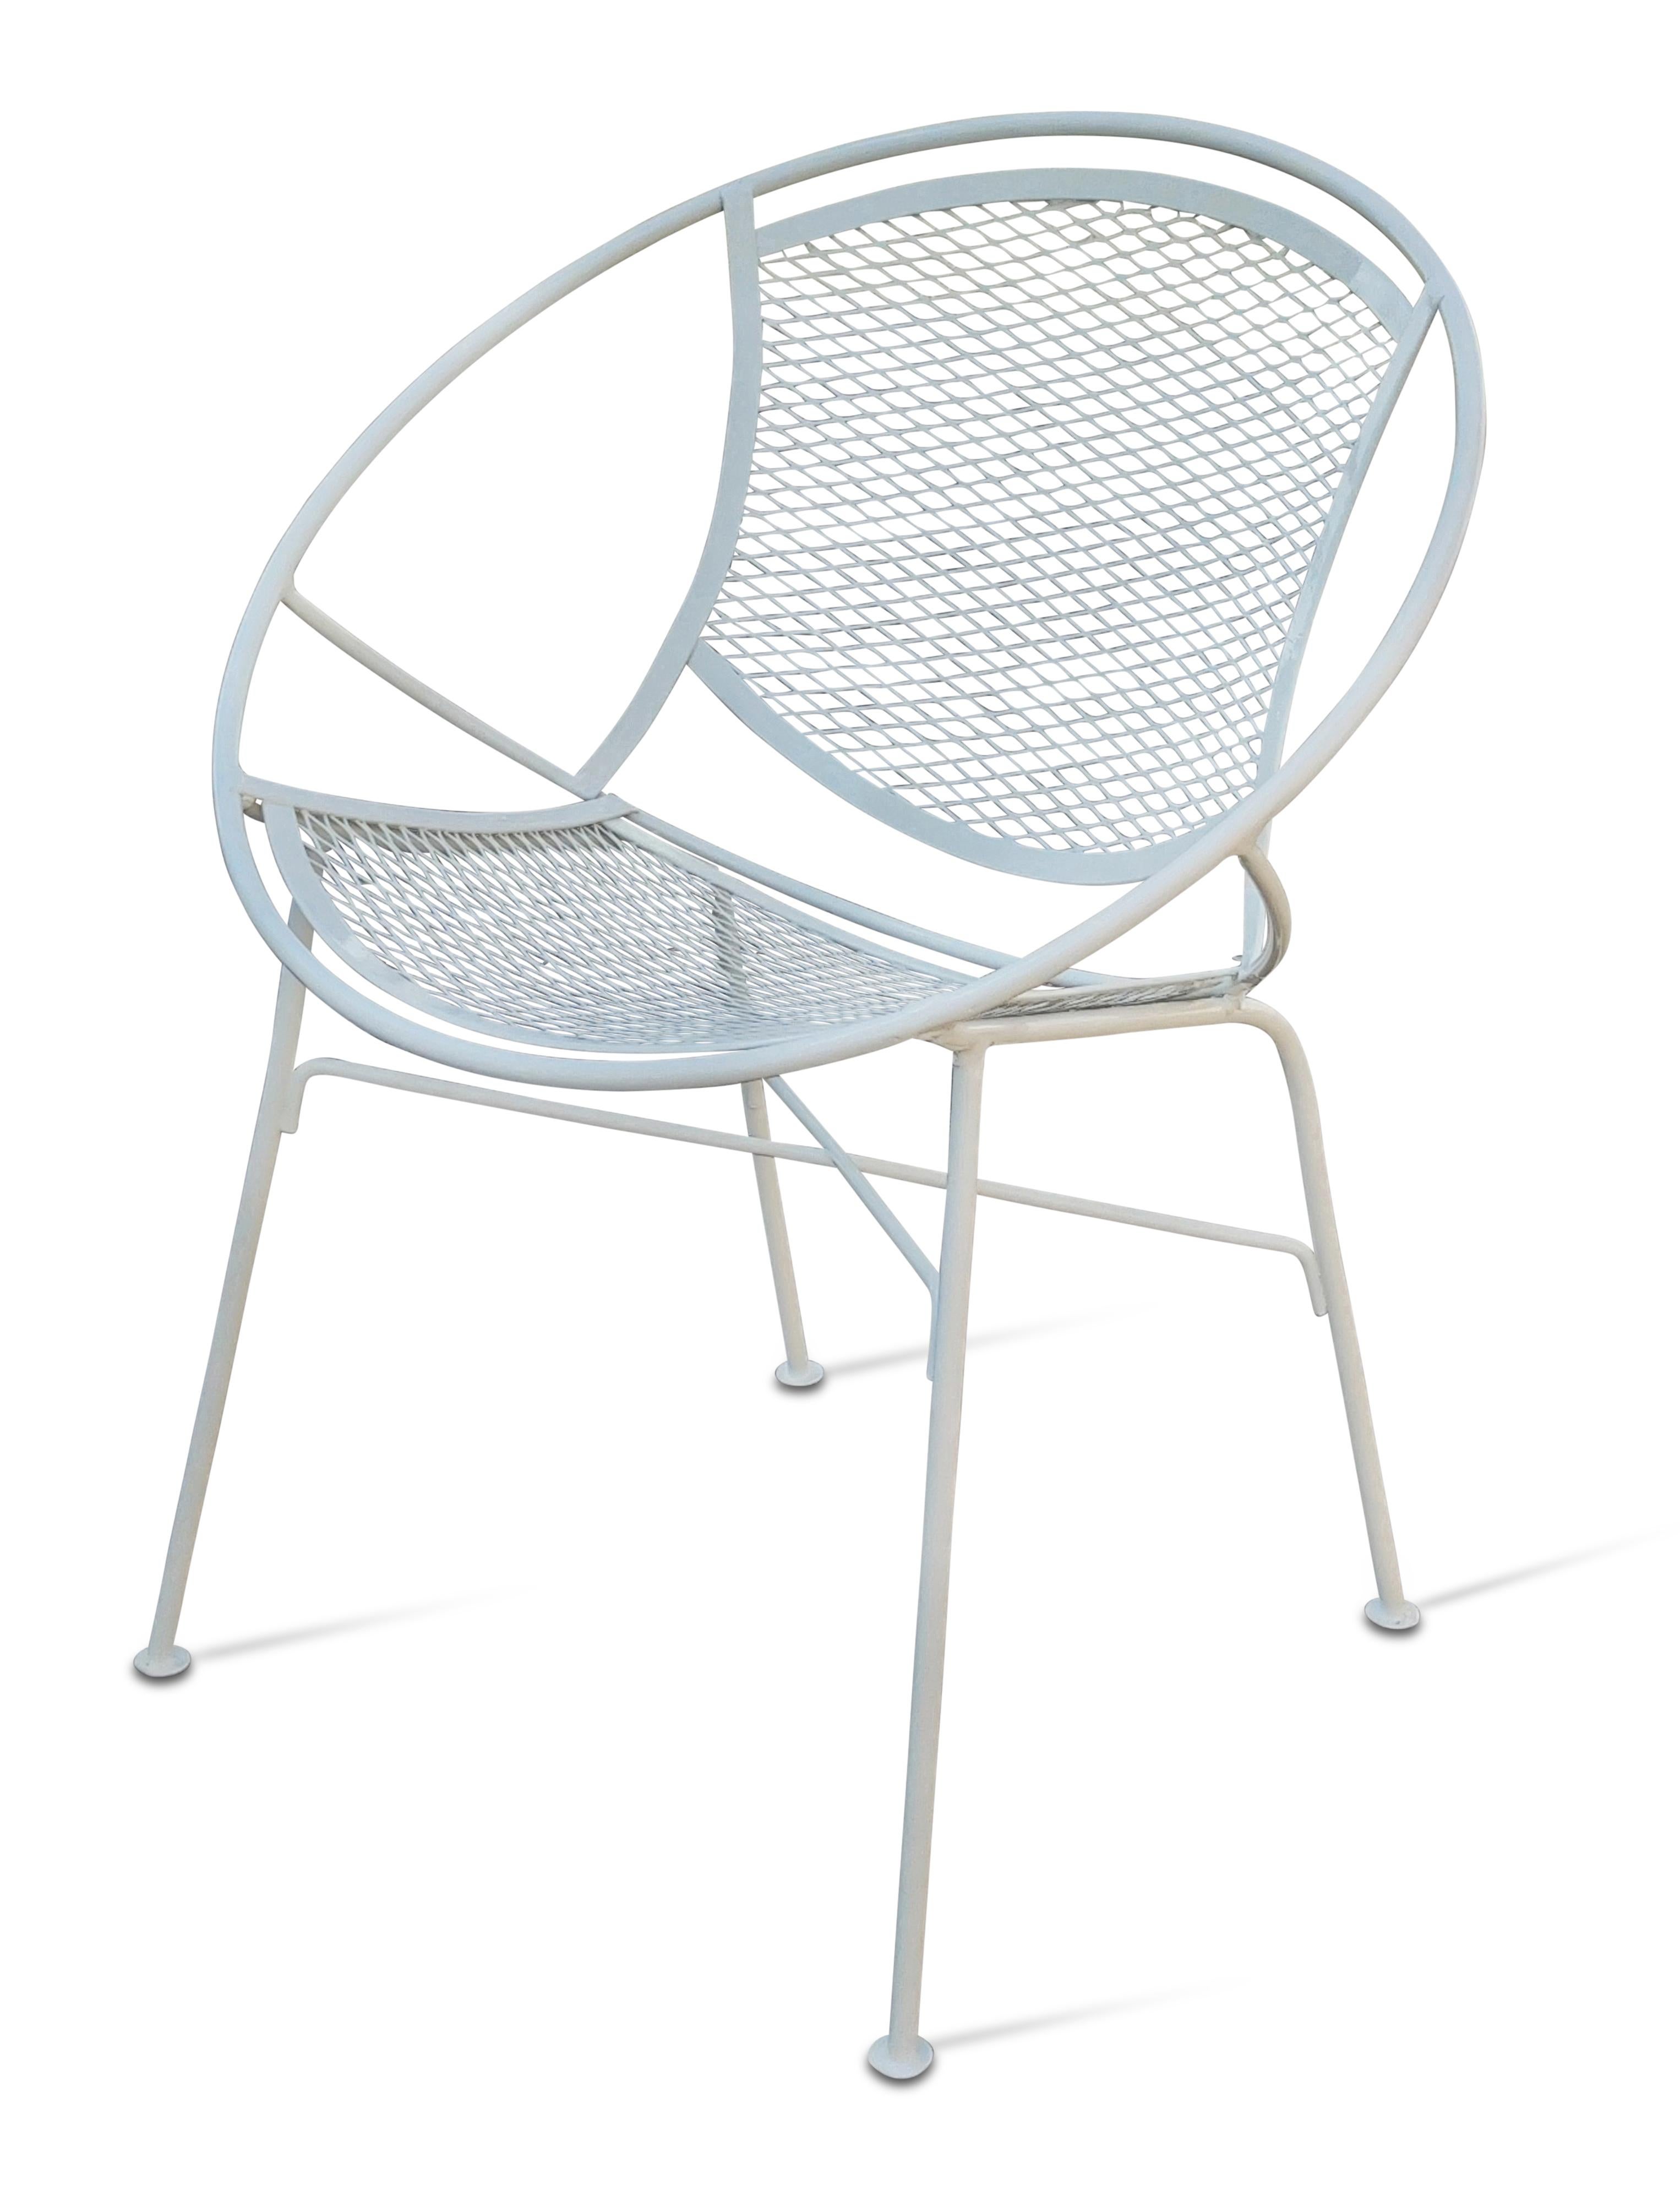 Ein Satz von acht schönen Stühlen, entworfen von Maurizio Tempestini für den renommierten Hersteller Salterini. Die 